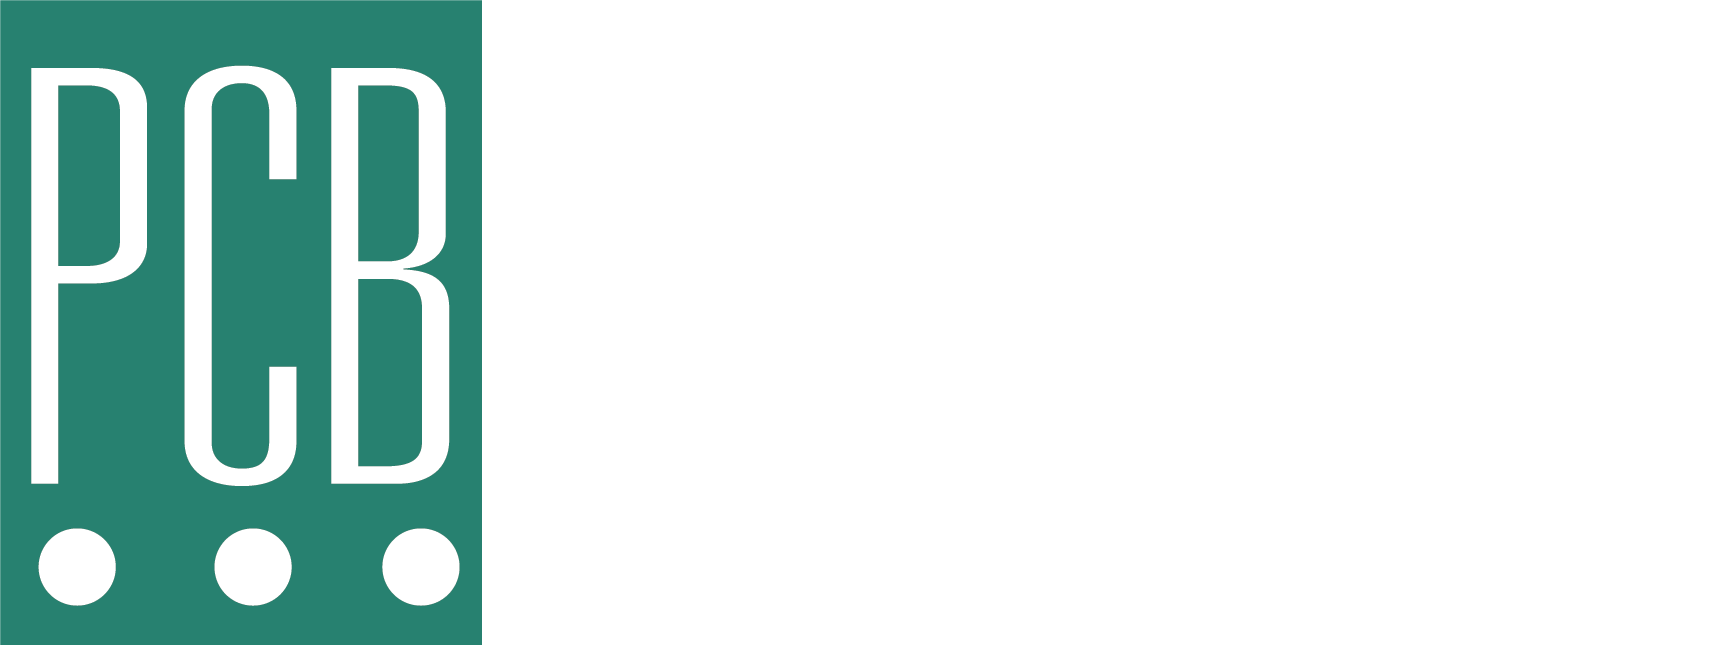 East2021 Logo White